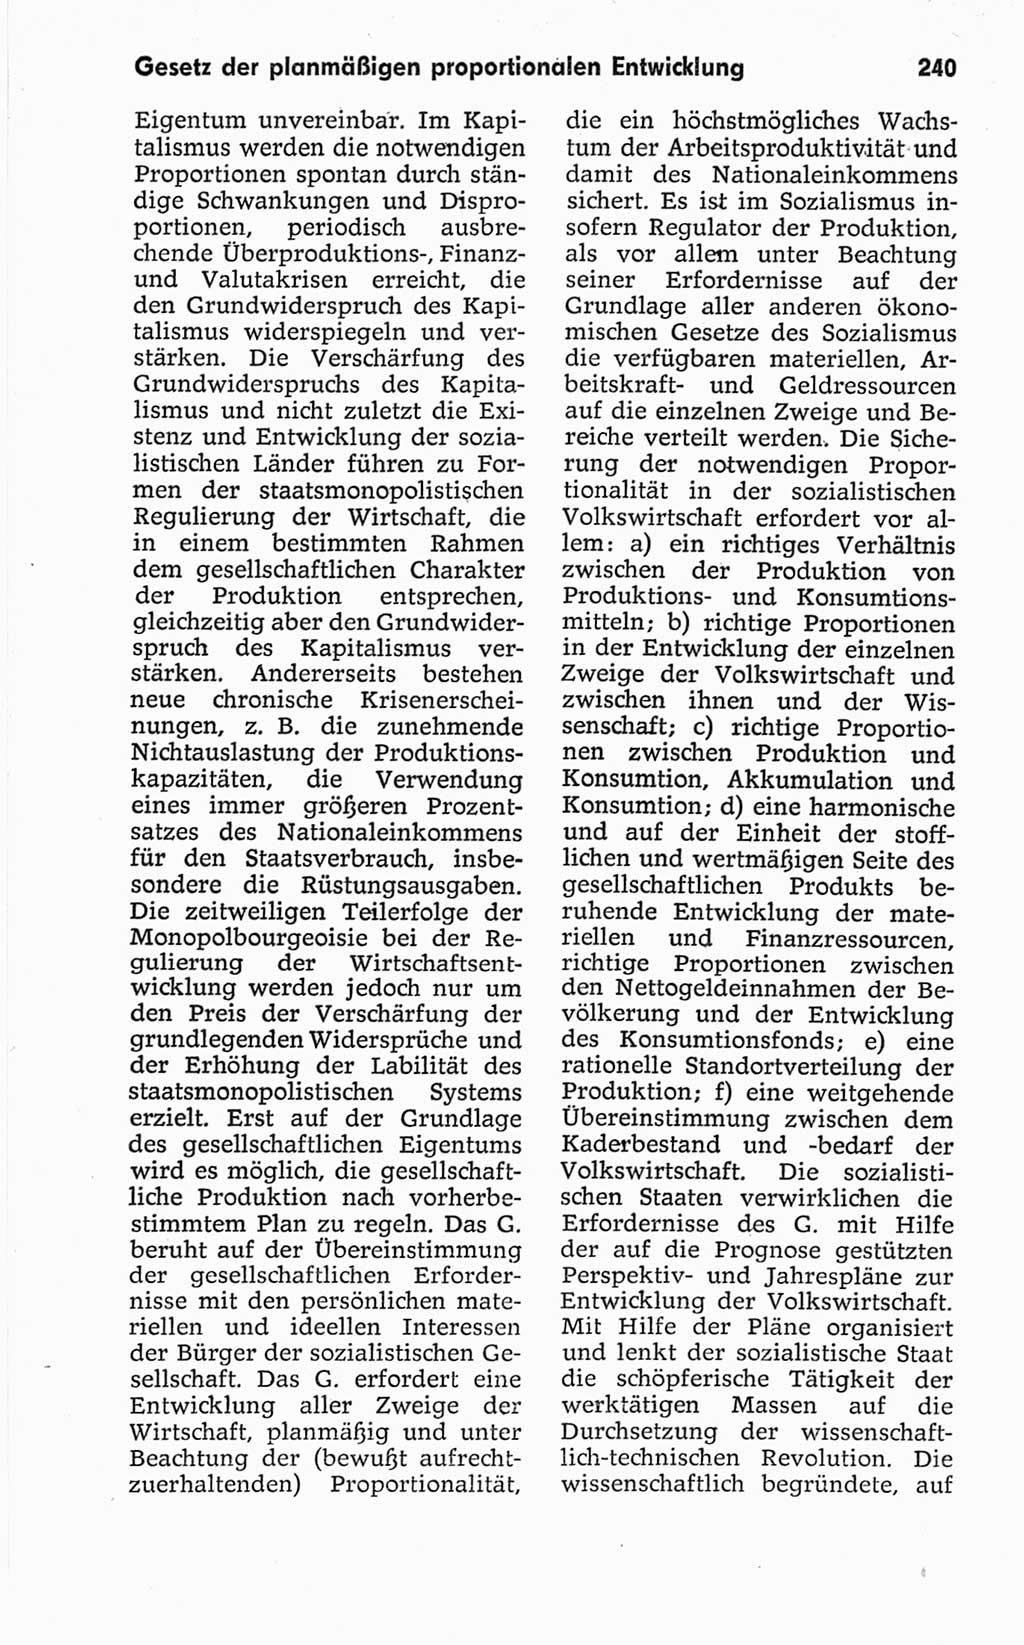 Kleines politisches Wörterbuch [Deutsche Demokratische Republik (DDR)] 1967, Seite 240 (Kl. pol. Wb. DDR 1967, S. 240)